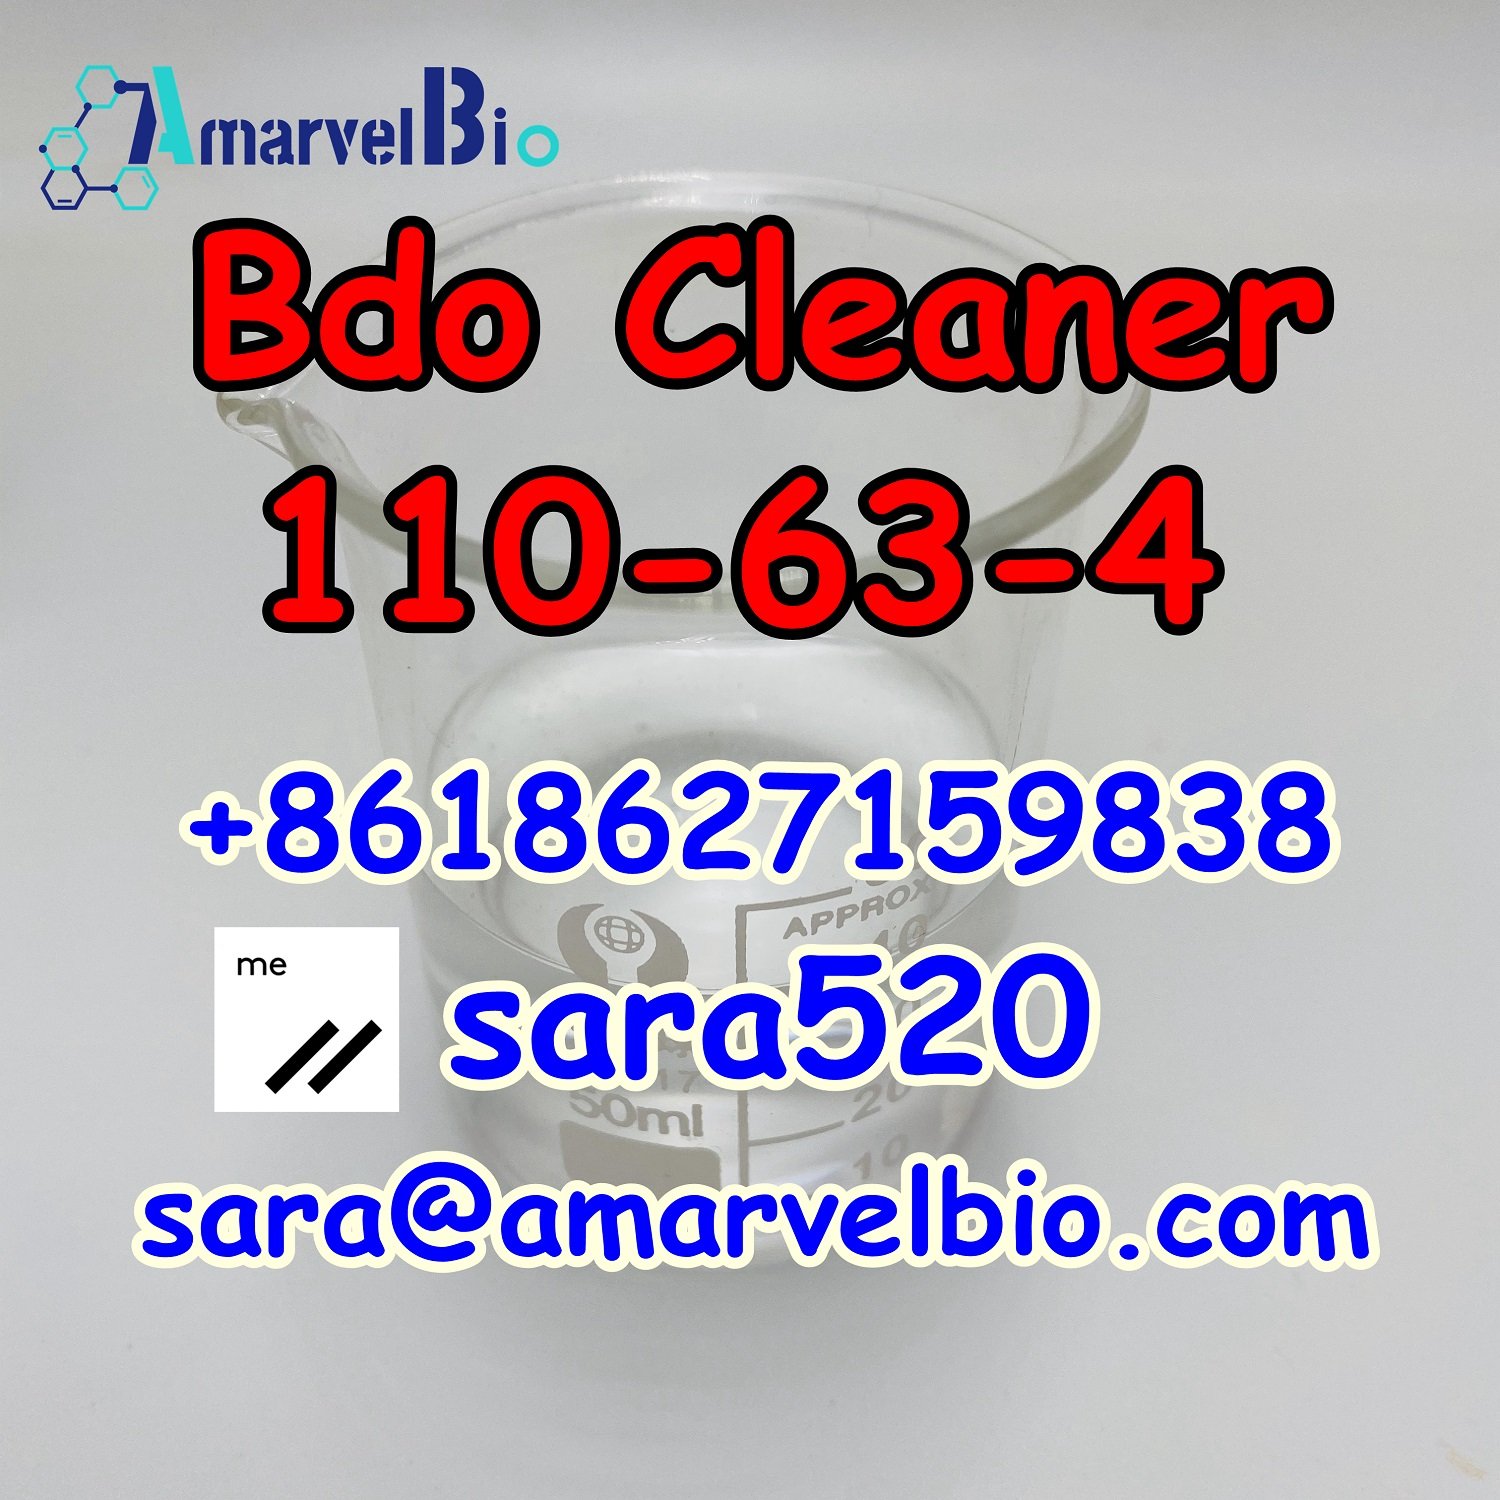 +8618627159838 Bdo Liquid CAS 110-63-4 Wheel Cleaner 1,4-Butanediol